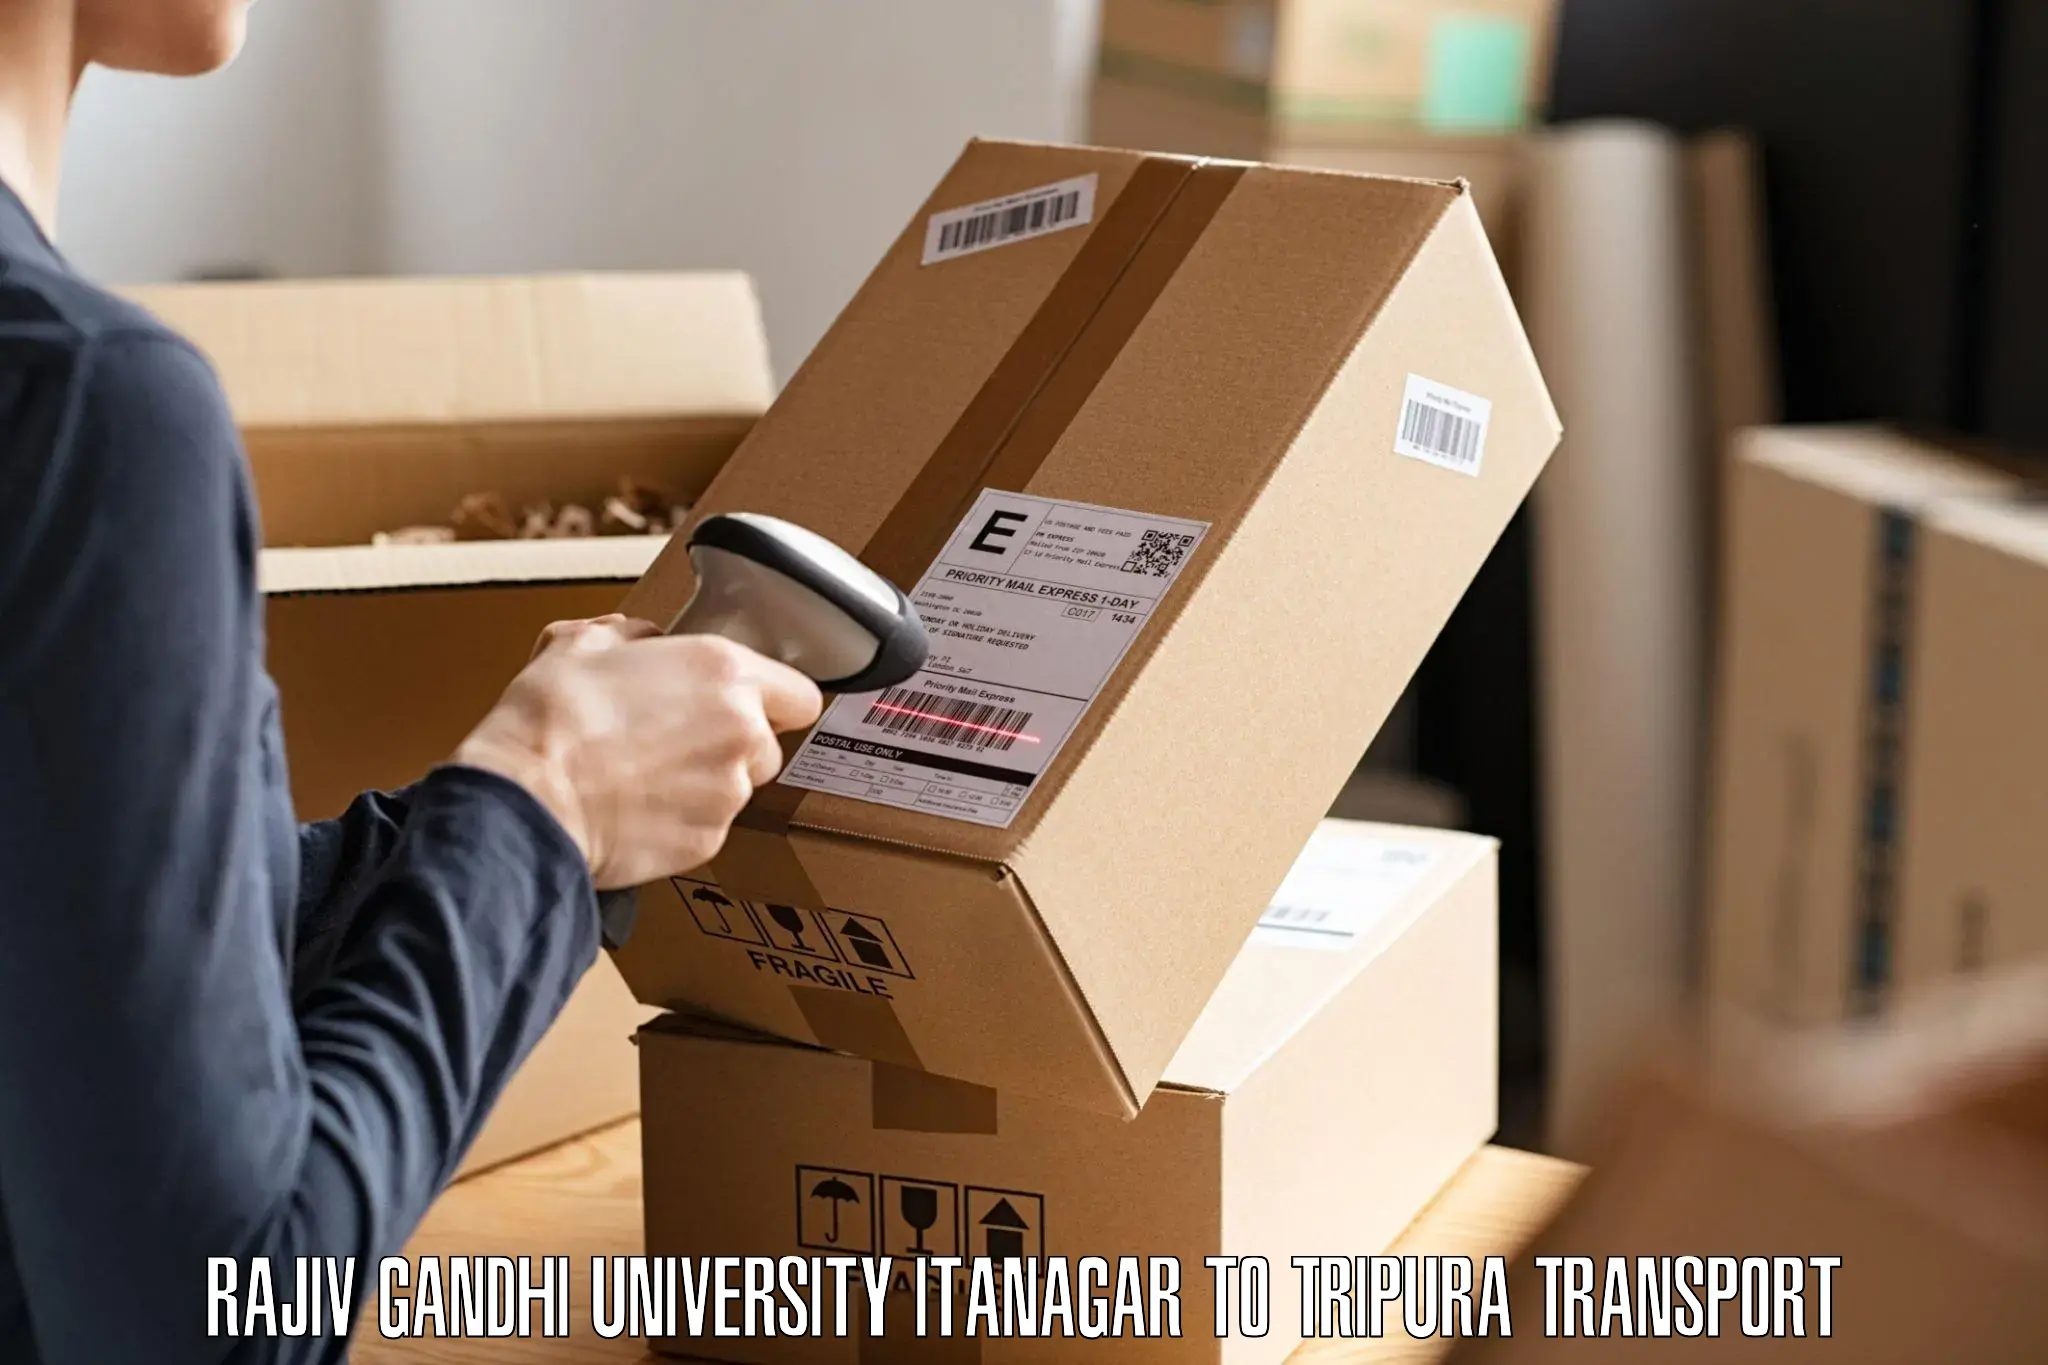 Pick up transport service Rajiv Gandhi University Itanagar to Manughat